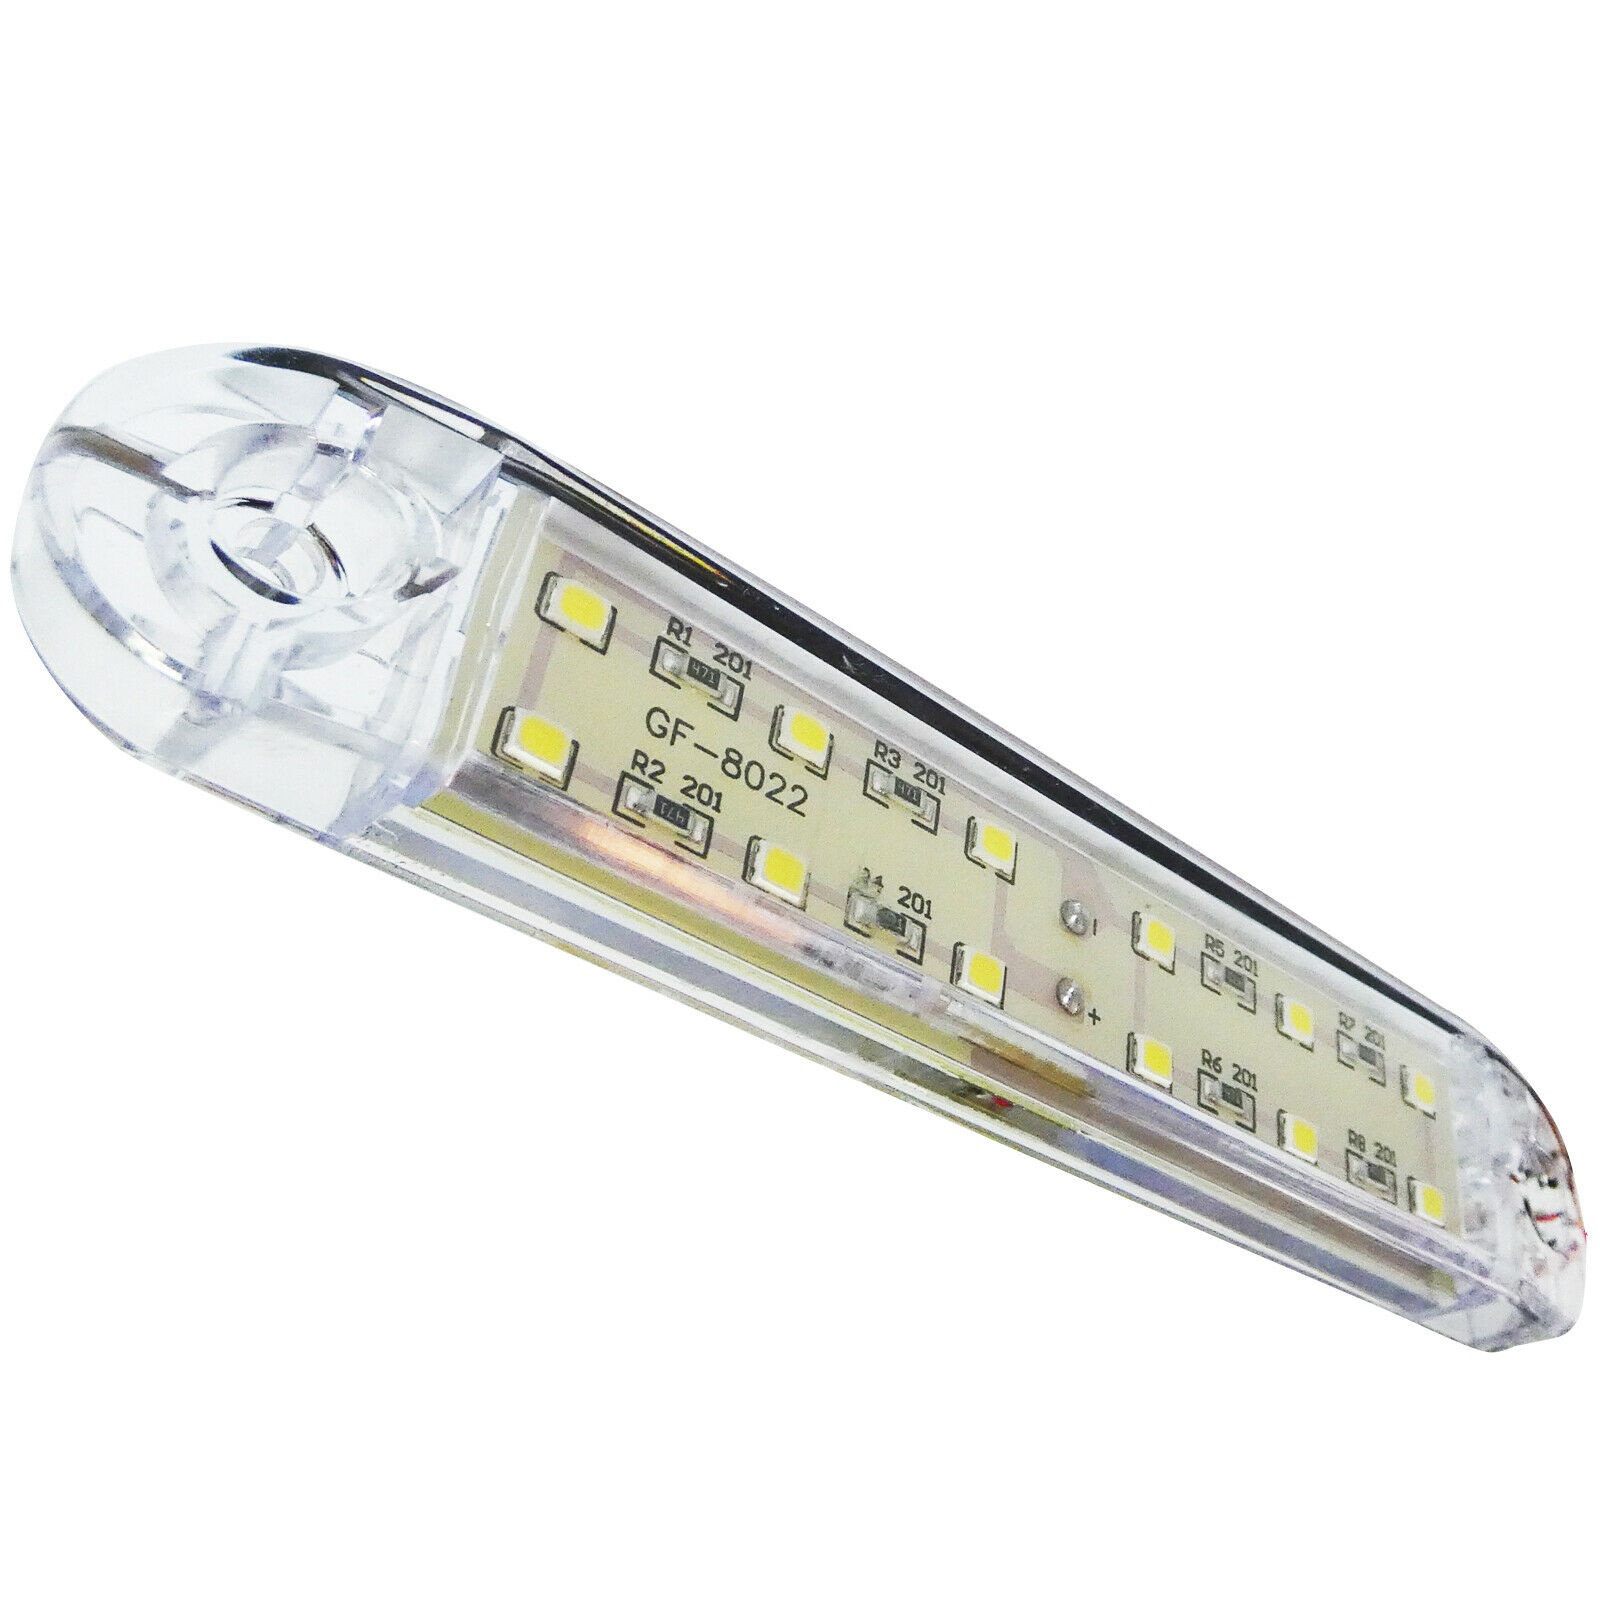 12 LED Side Marker light Indicator Trailer Truck Caravan White 12v 